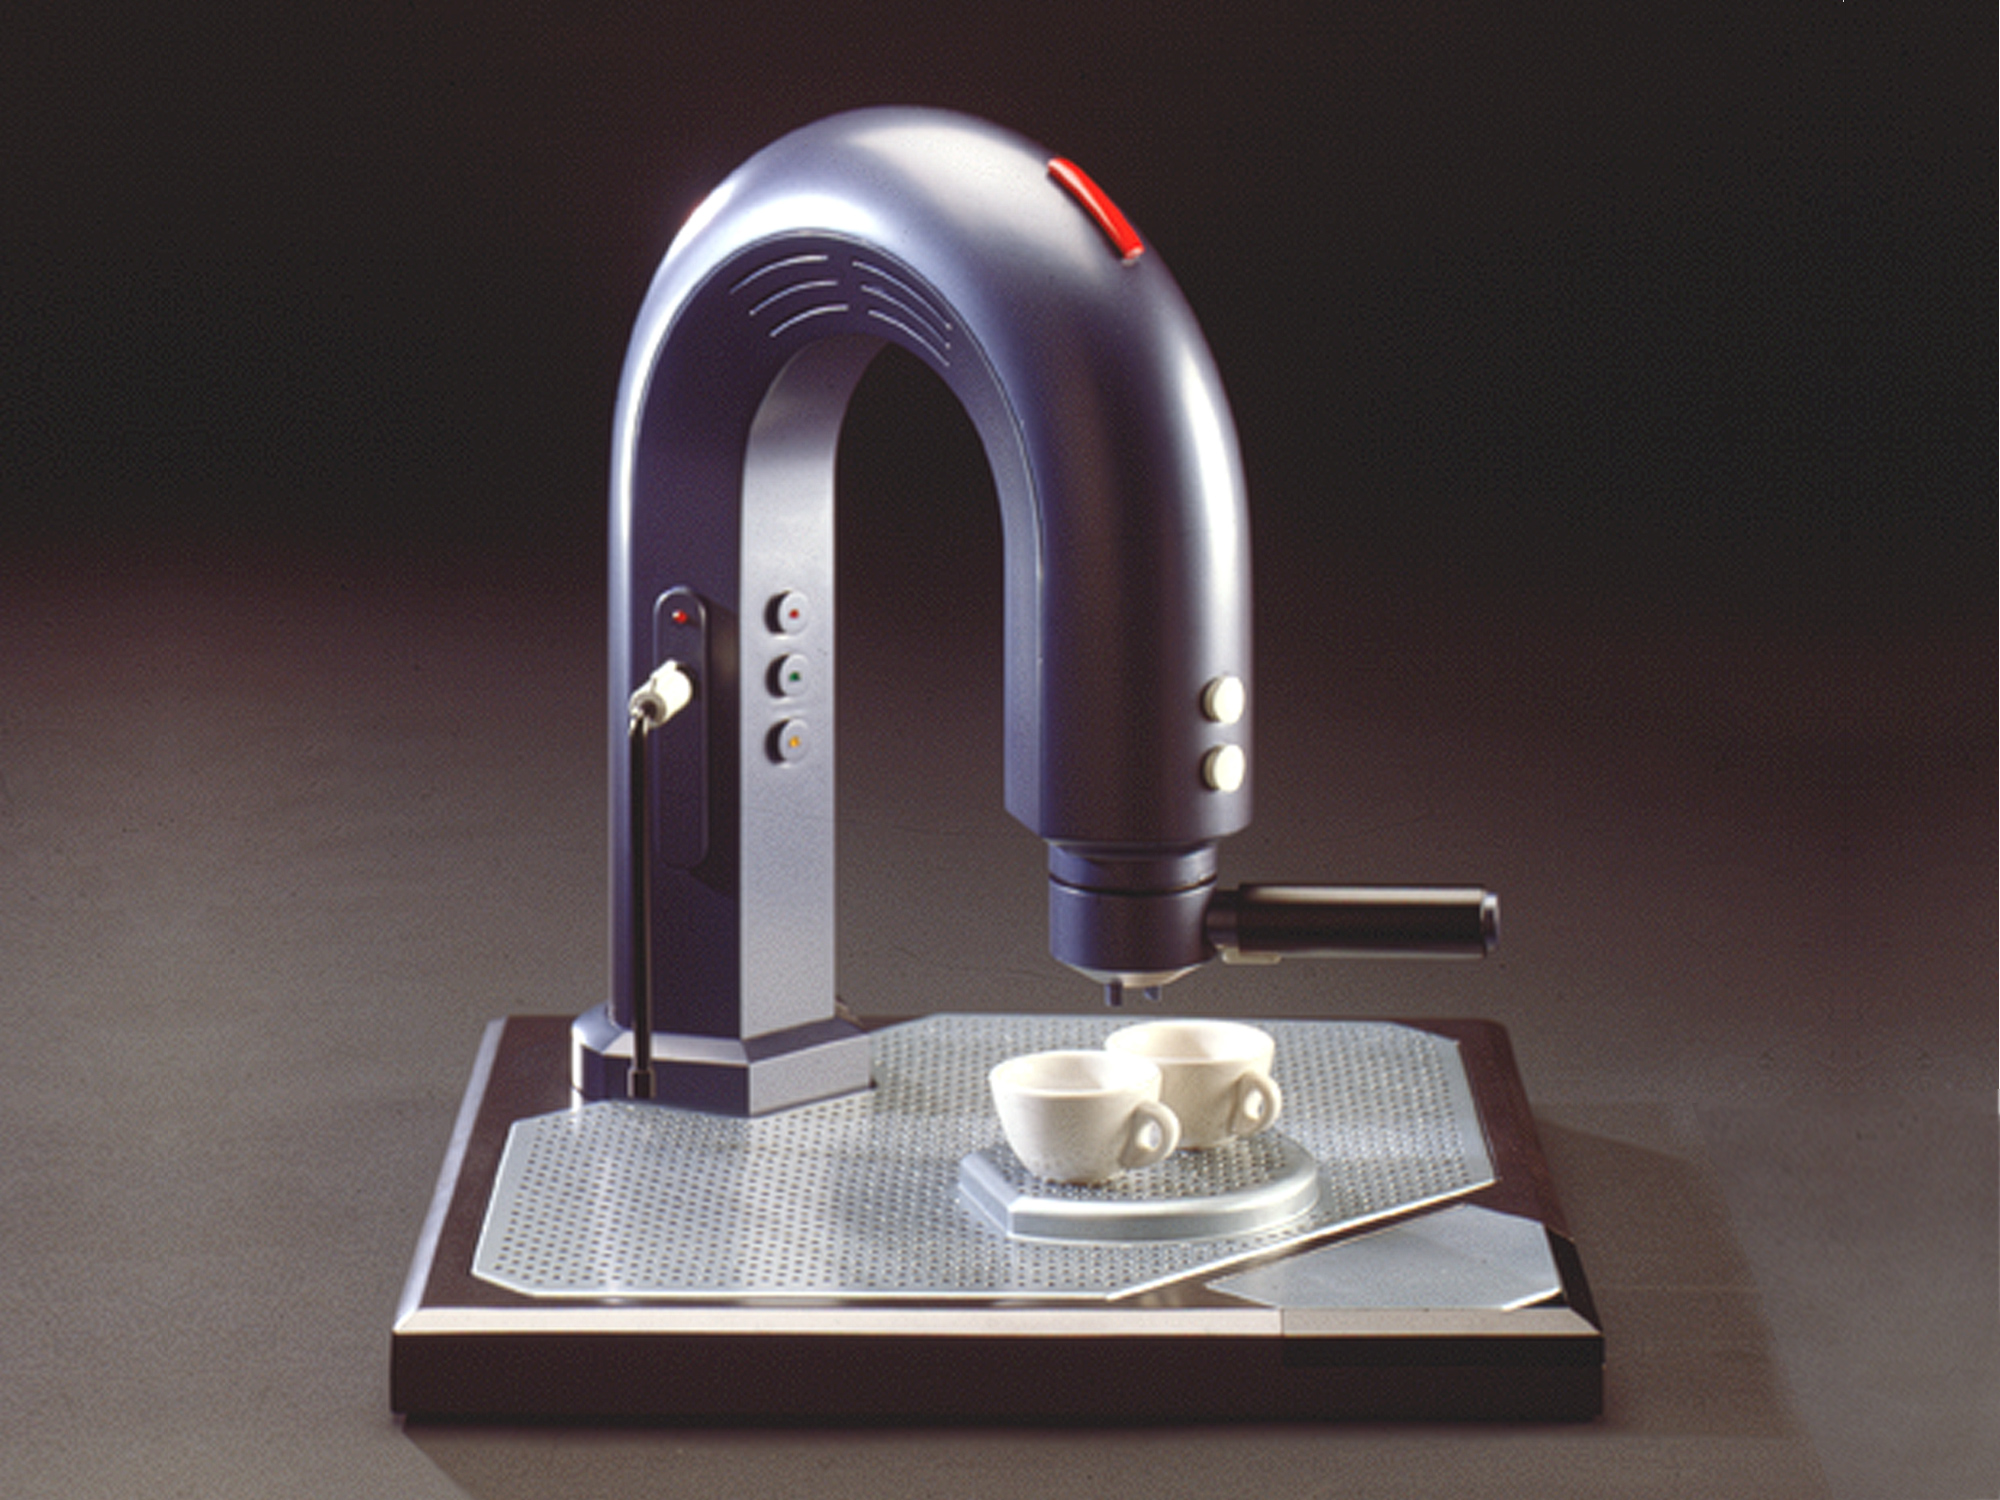 cigno, Espressomaschine für die Gestronomie, designed by Sybs Bauer